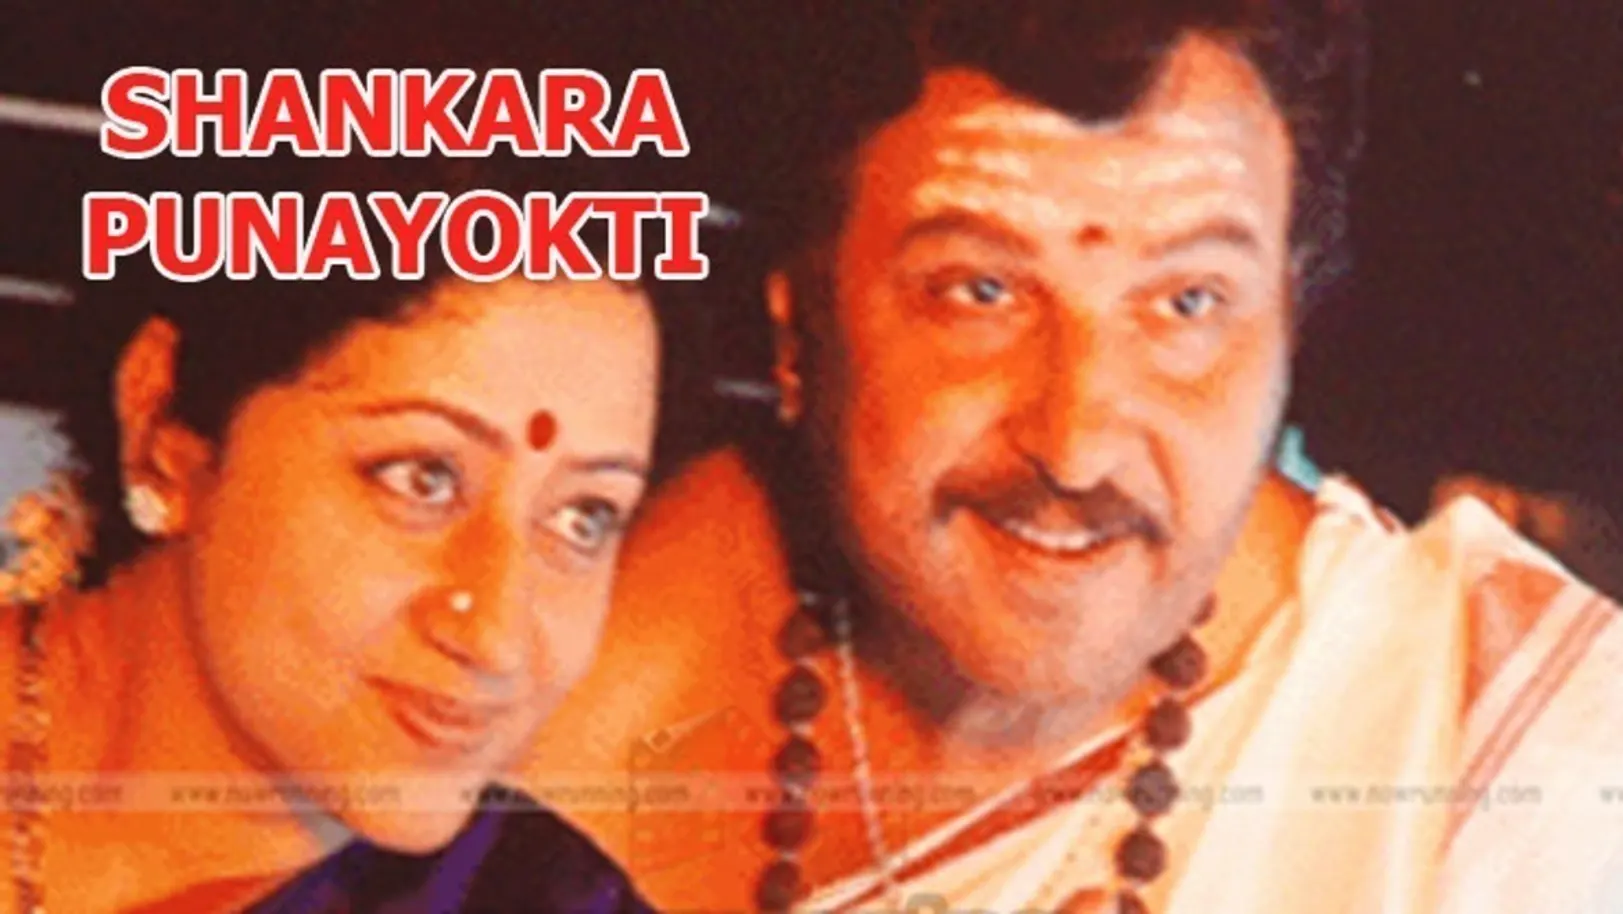 Shankara Punyakoti Movie